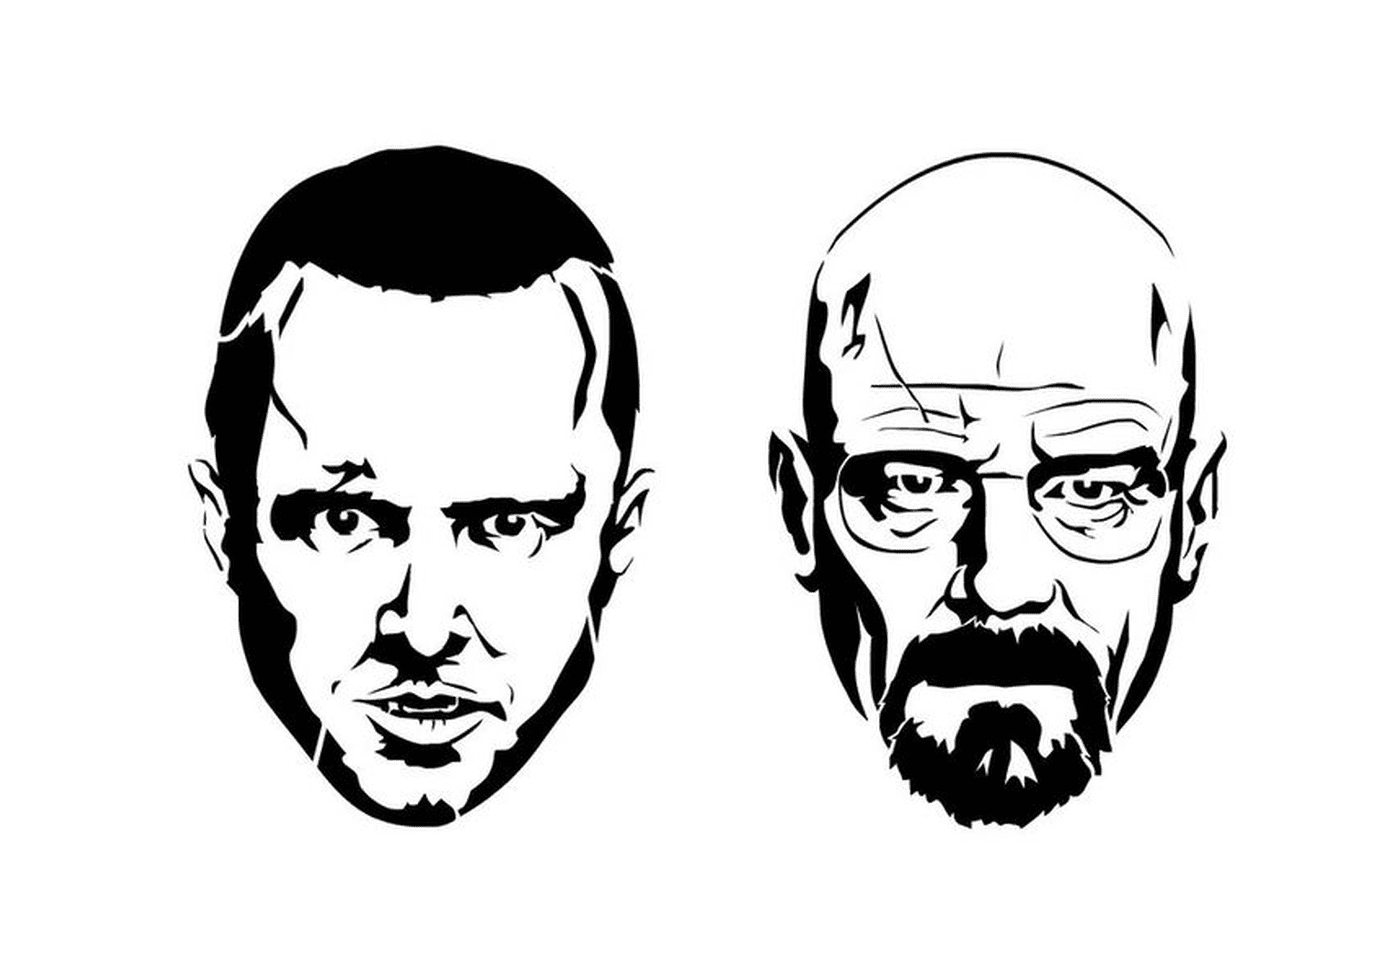  Duas imagens em preto e branco de Walter White e Jesse Pinkman de Breaking Bad 